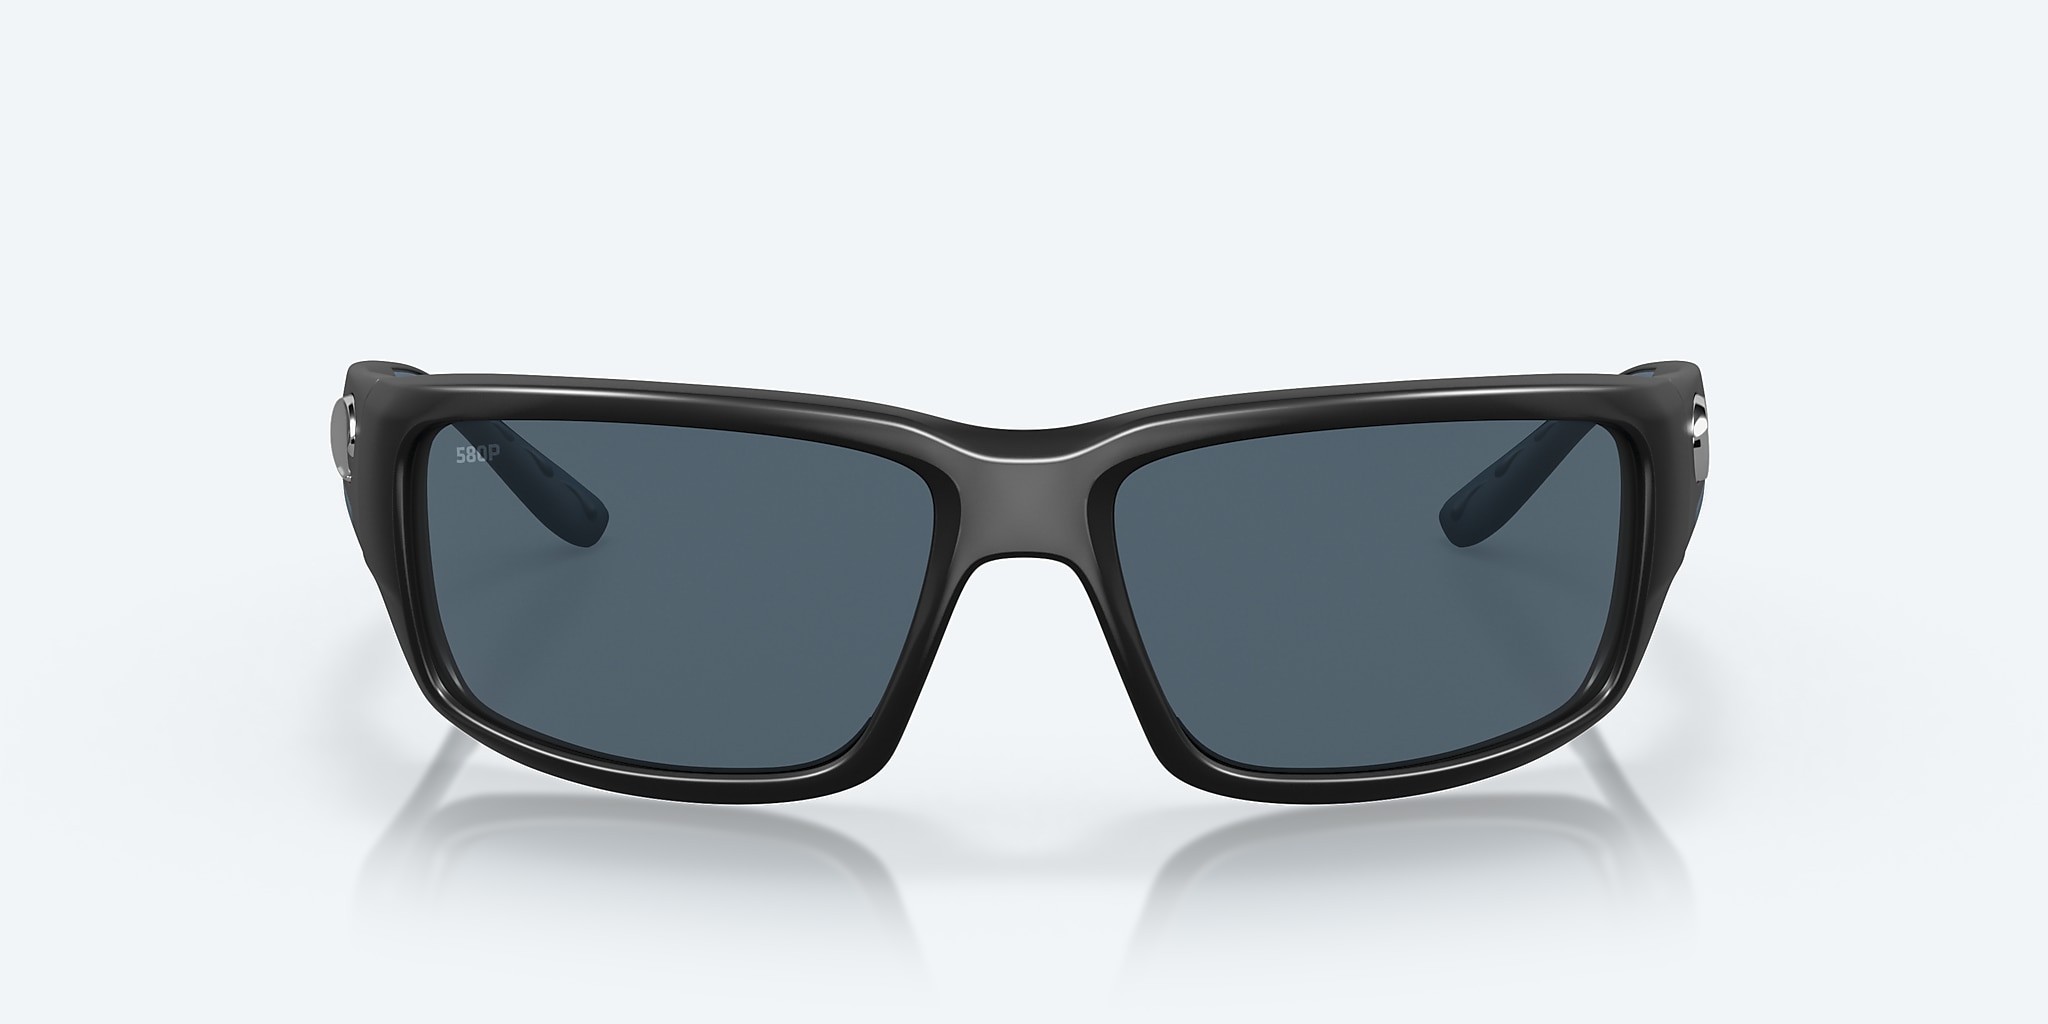 Costa Del Mar Fantail Sunglasses - Polarized - Black/Gray Lens